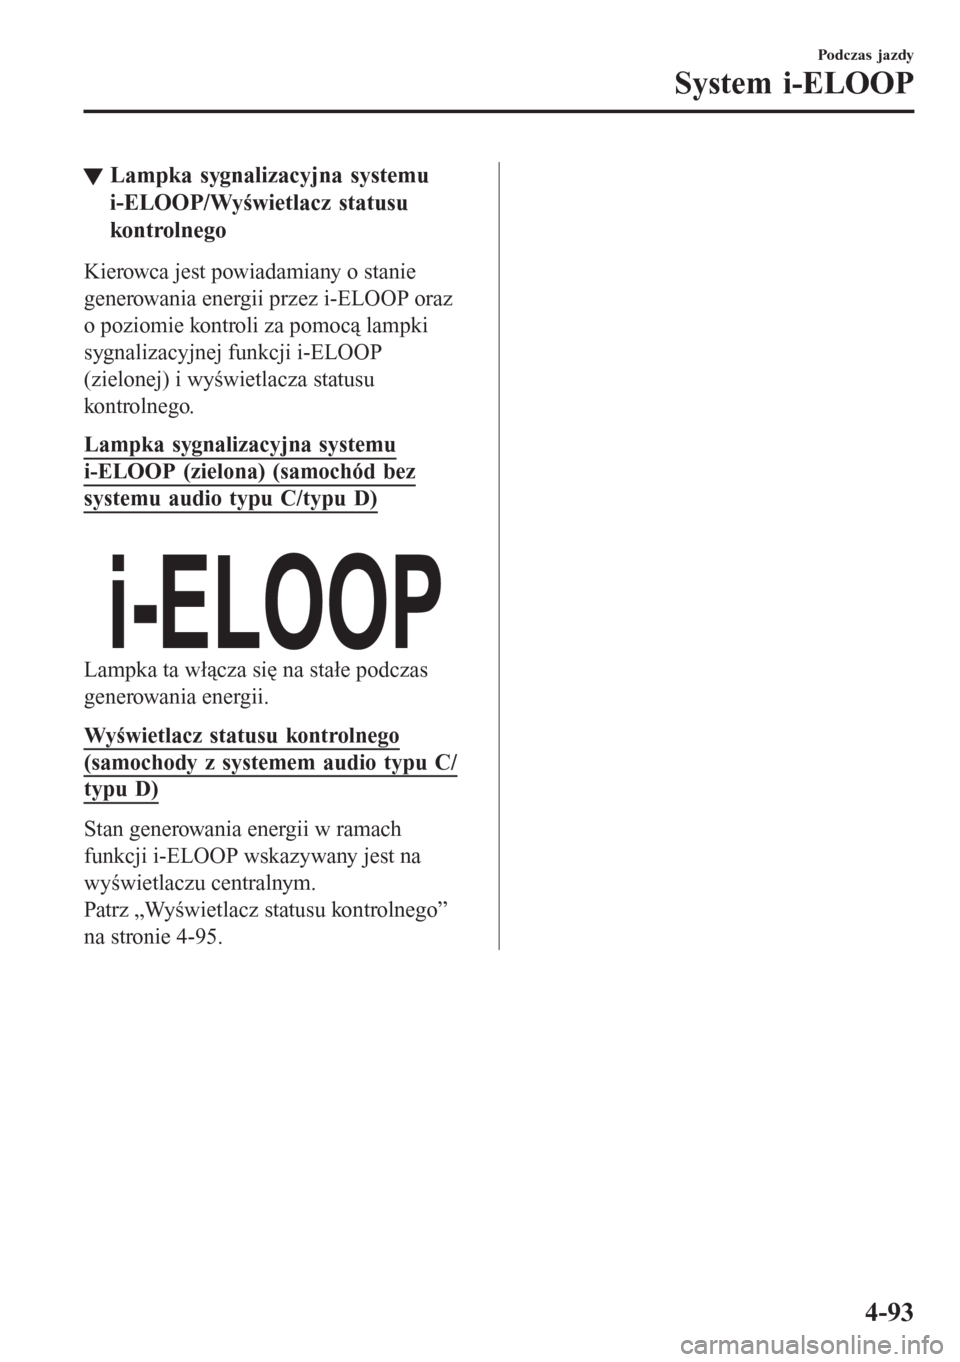 MAZDA MODEL CX-3 2016  Instrukcja Obsługi (in Polish) tLampka sygnalizacyjna systemu
i-ELOOP/Wyświetlacz statusu
kontrolnego
Kierowca jest powiadamiany o stanie
generowania energii przez i-ELOOP oraz
o poziomie kontroli za pomocą lampki
sygnalizacyjnej